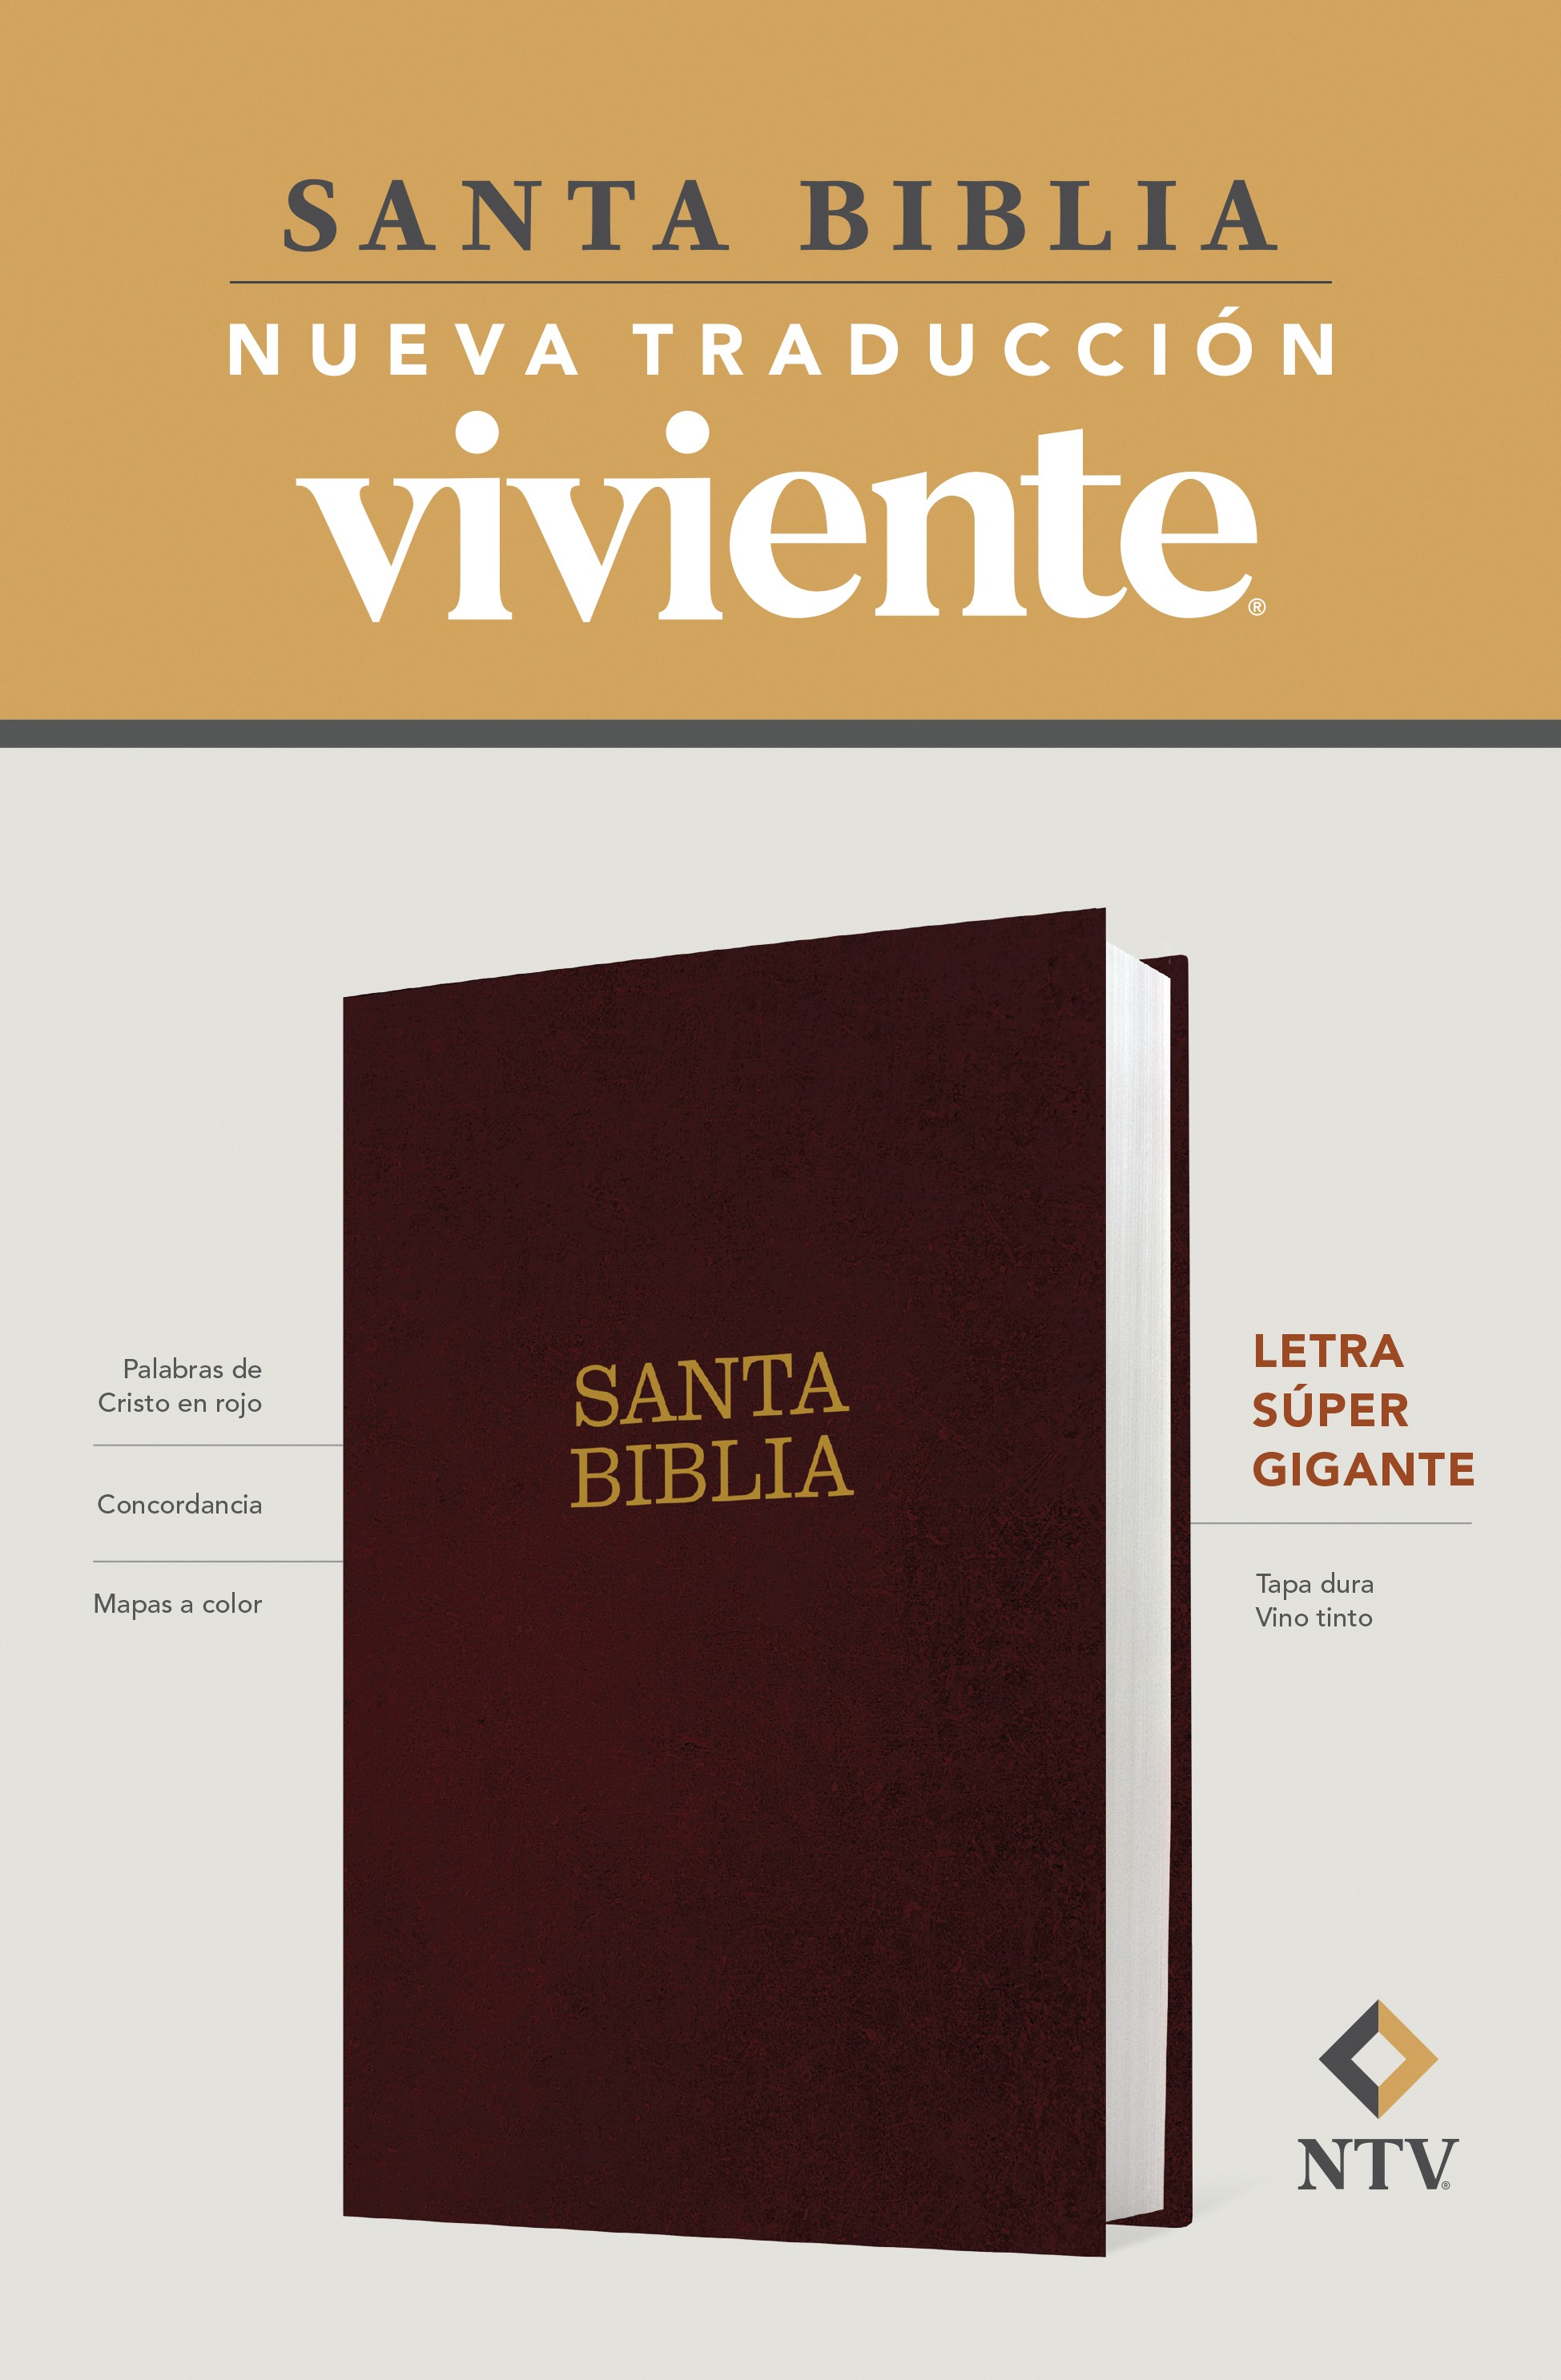  Santa Biblia NTV, letra súper gigante (Tapa dura, Vino tinto, Índice, Letra Roja)